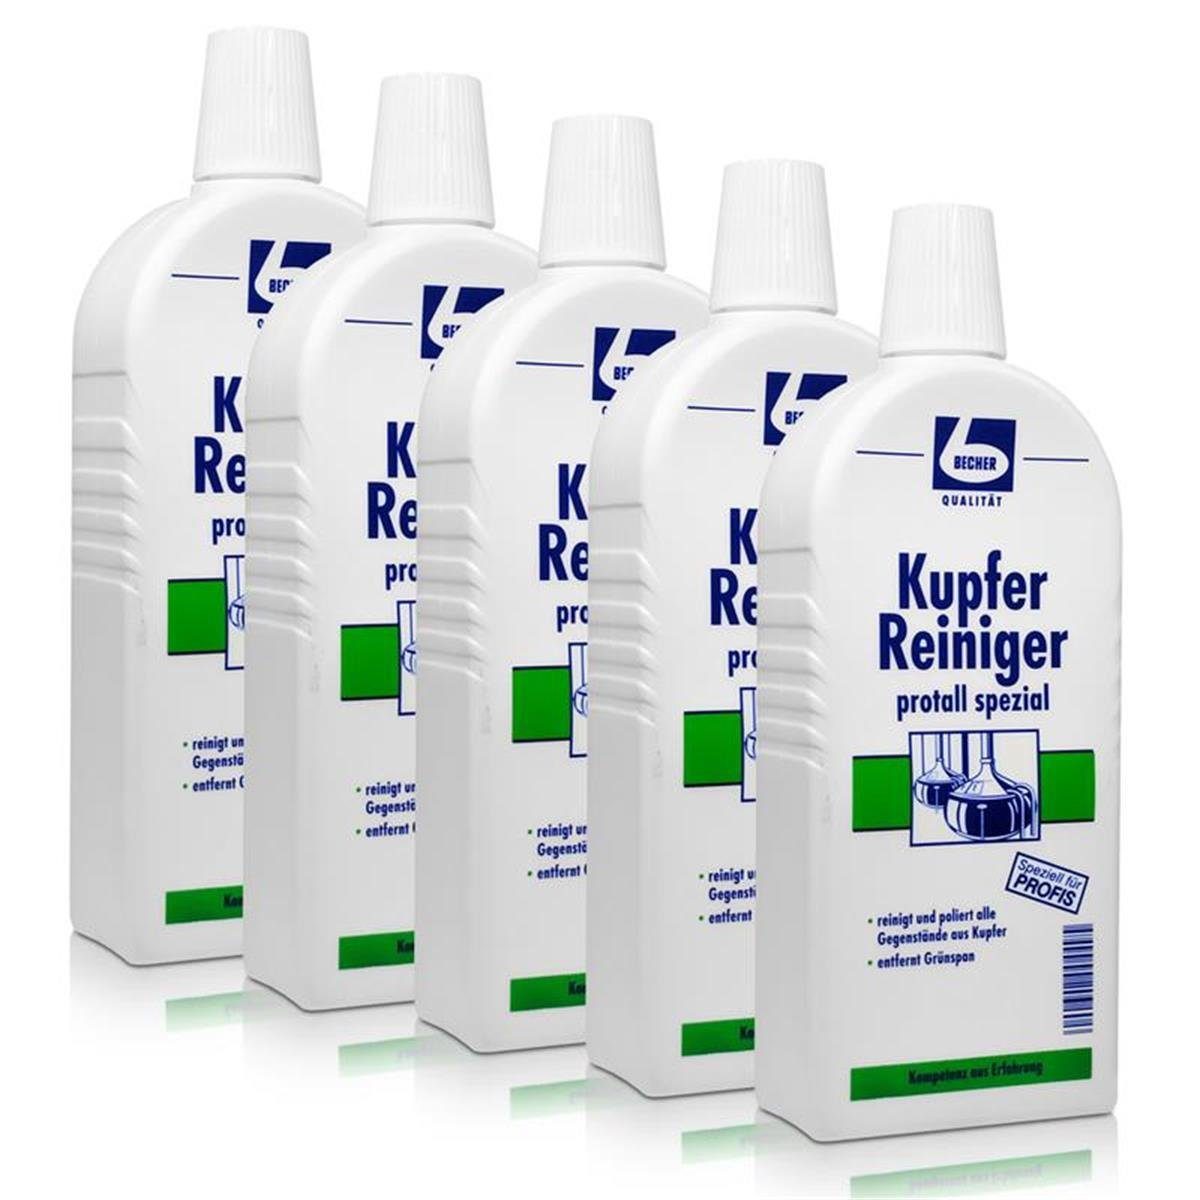 Dr. Becher Becher Spezialwaschmittel ml protall 500 5x Reiniger Dr. spezial Kupfer